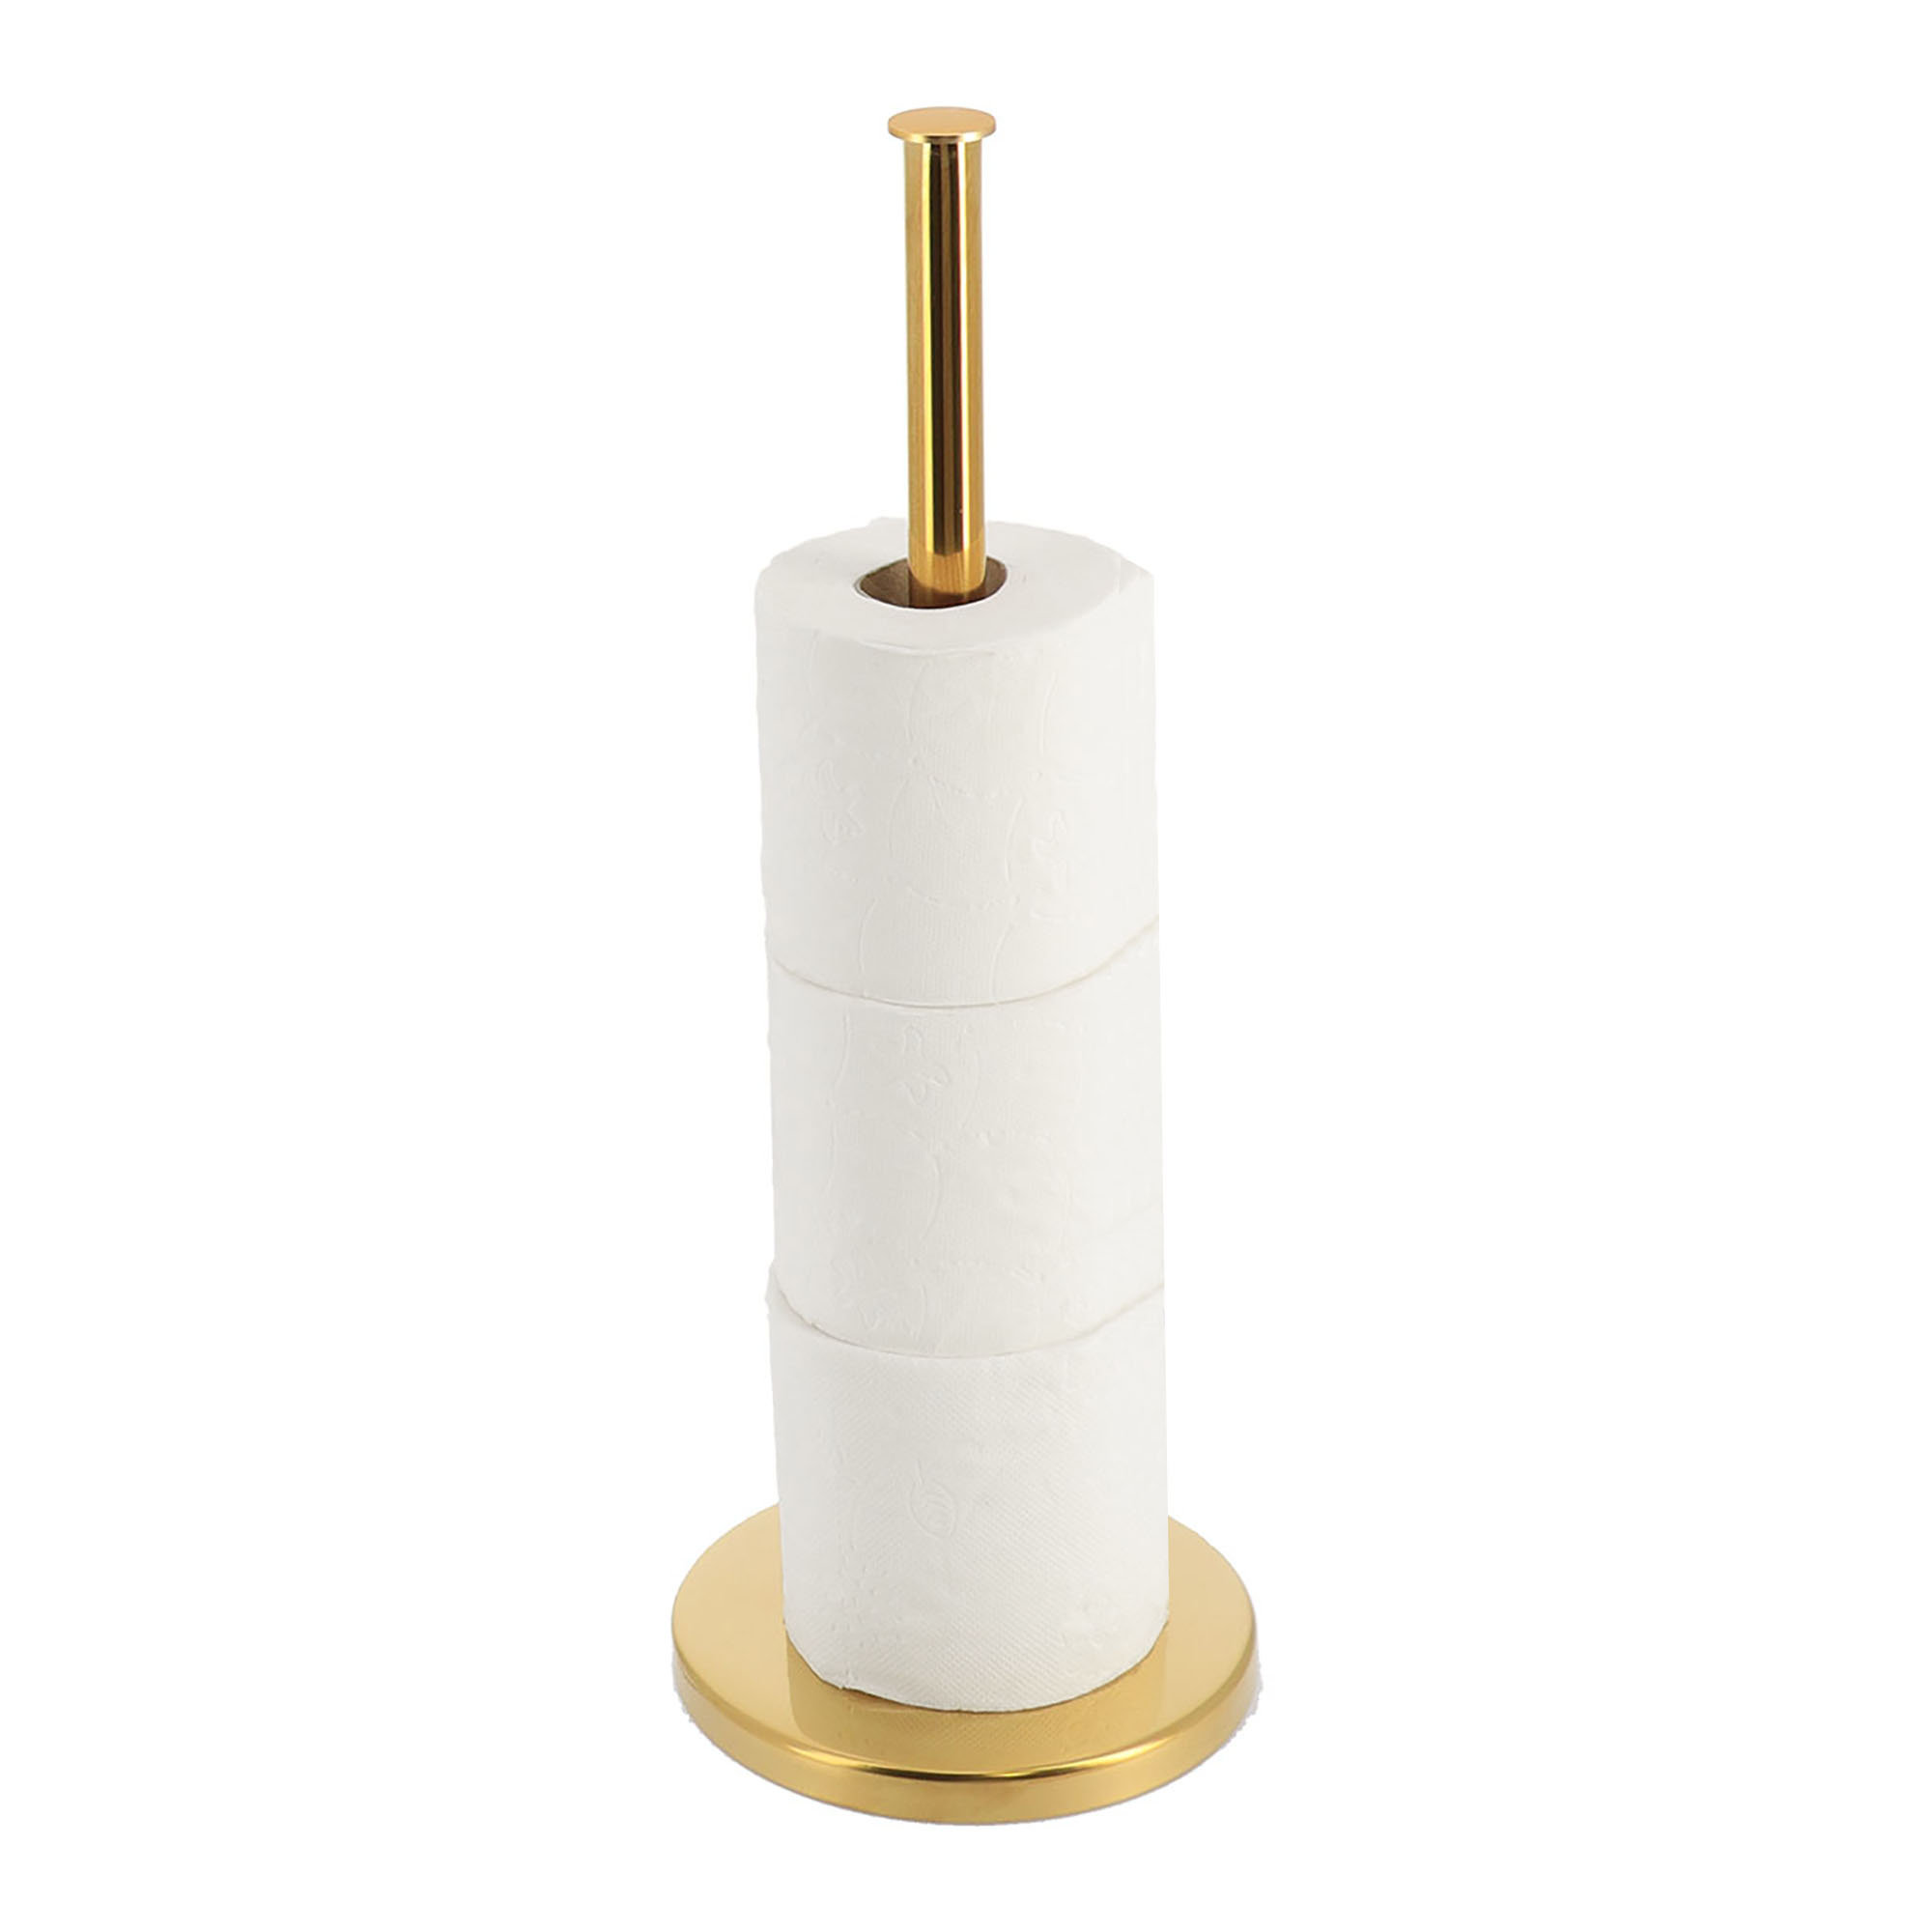 https://assets.wfcdn.com/im/65544950/compr-r85/2402/240200835/multi-purpose-vertical-holder-4-rolls-toilet-paper-reserve-or-paper-towel-holder.jpg